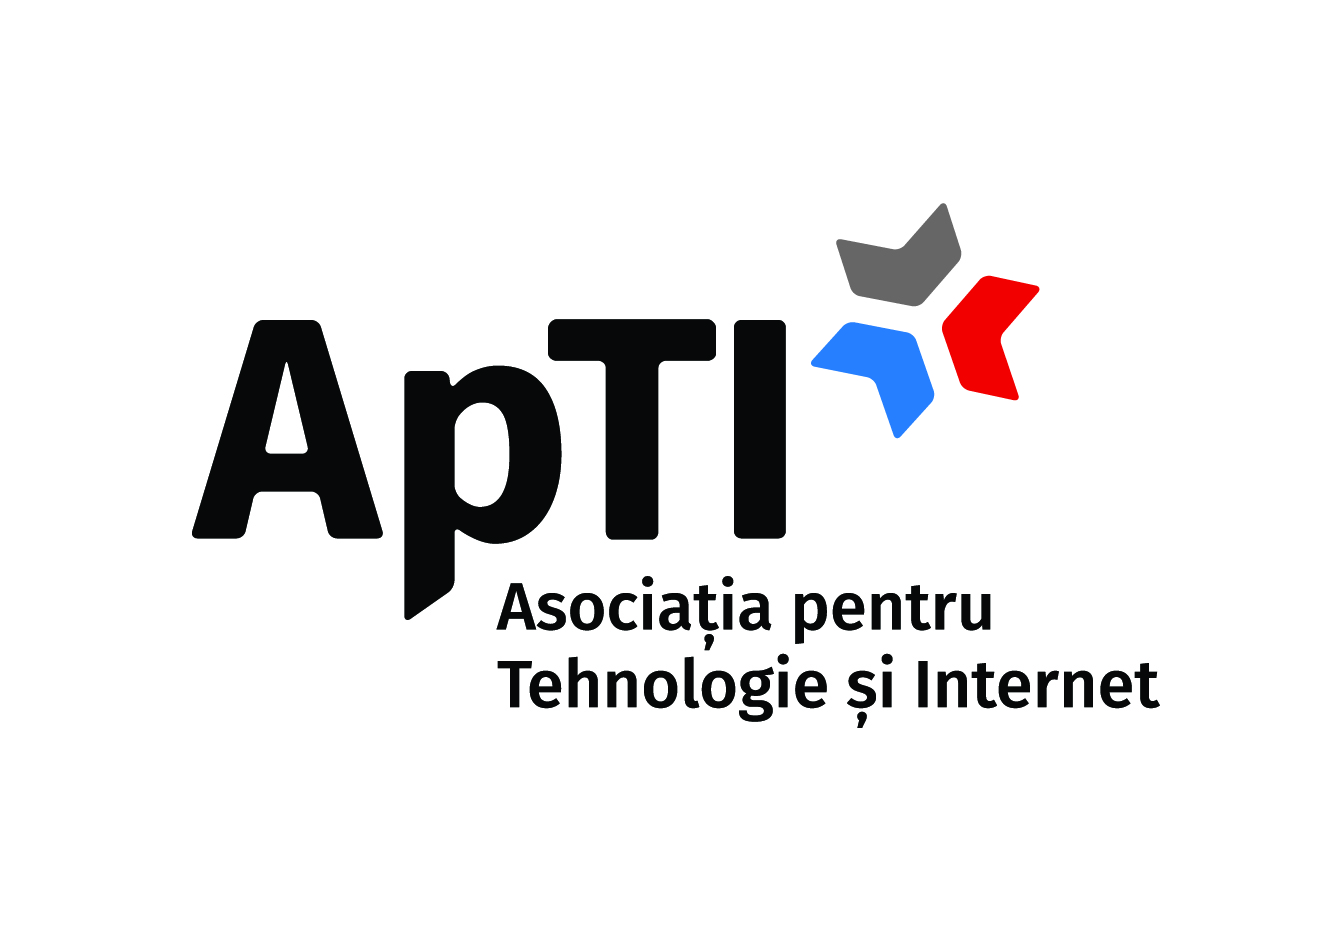 ApTI - Asociatia pentru Tehnologie si Internet logo